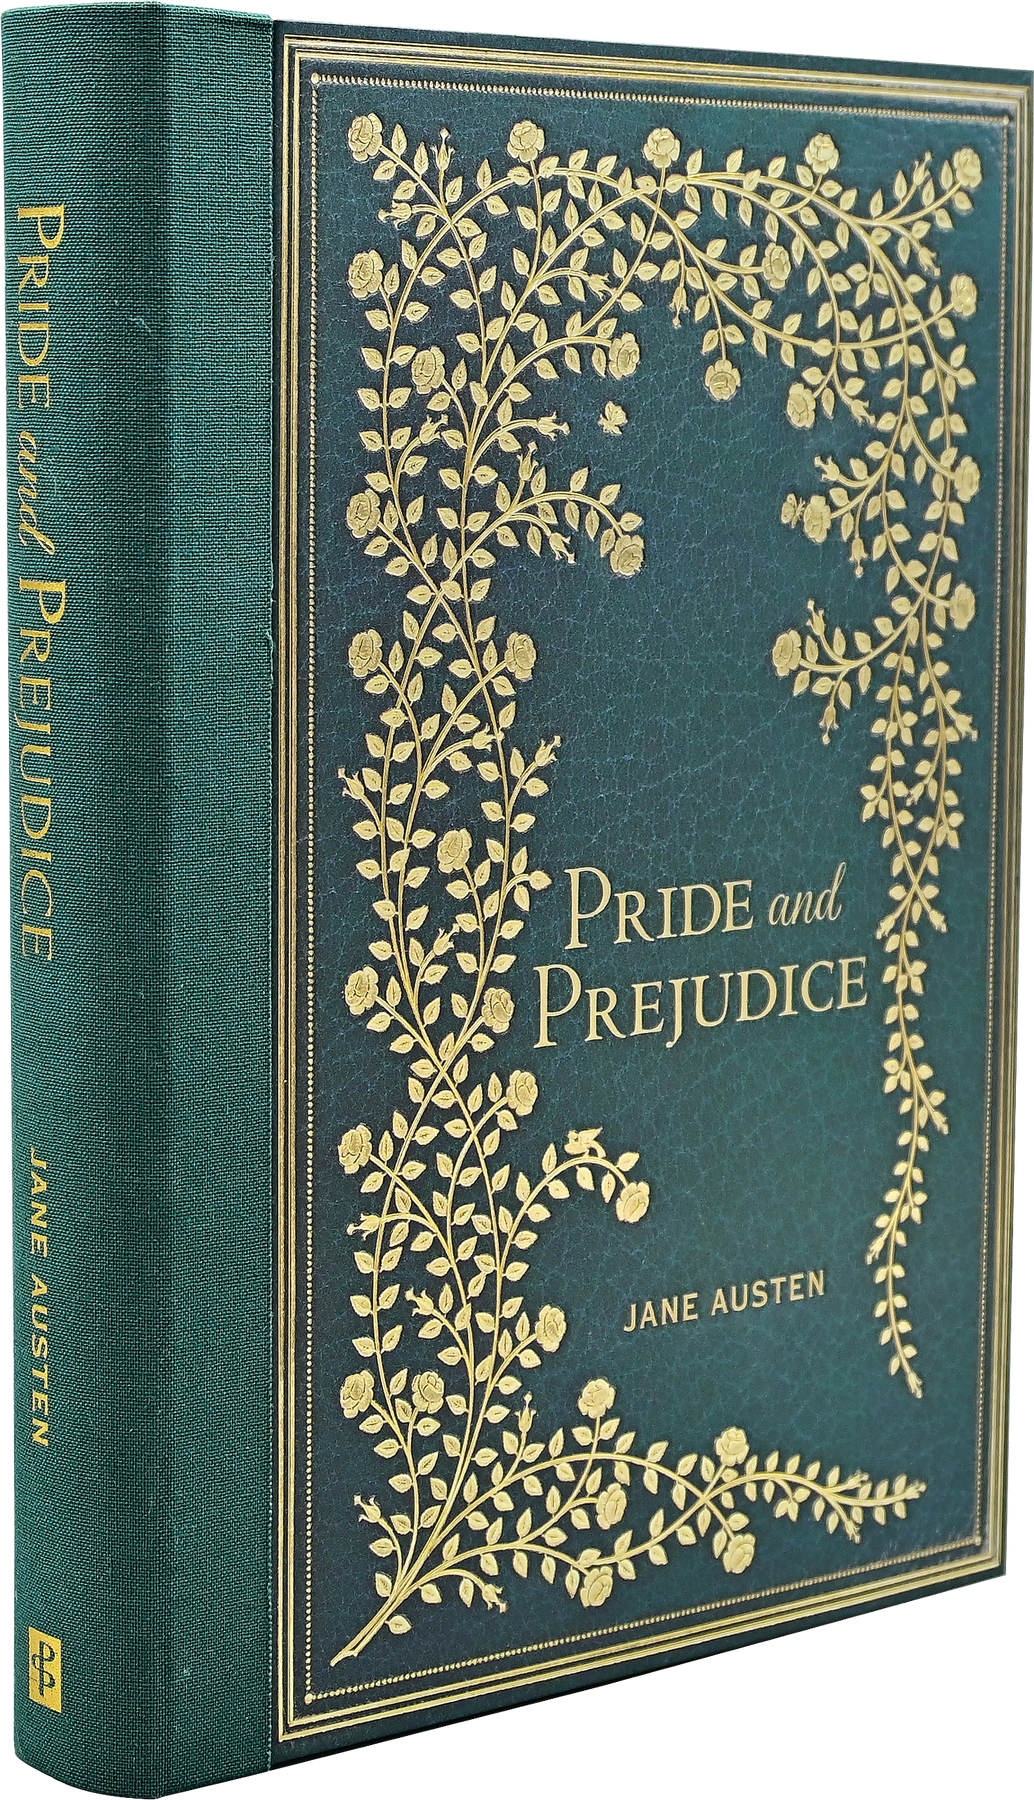 Pride and Prejudice – Peter Pauper Press